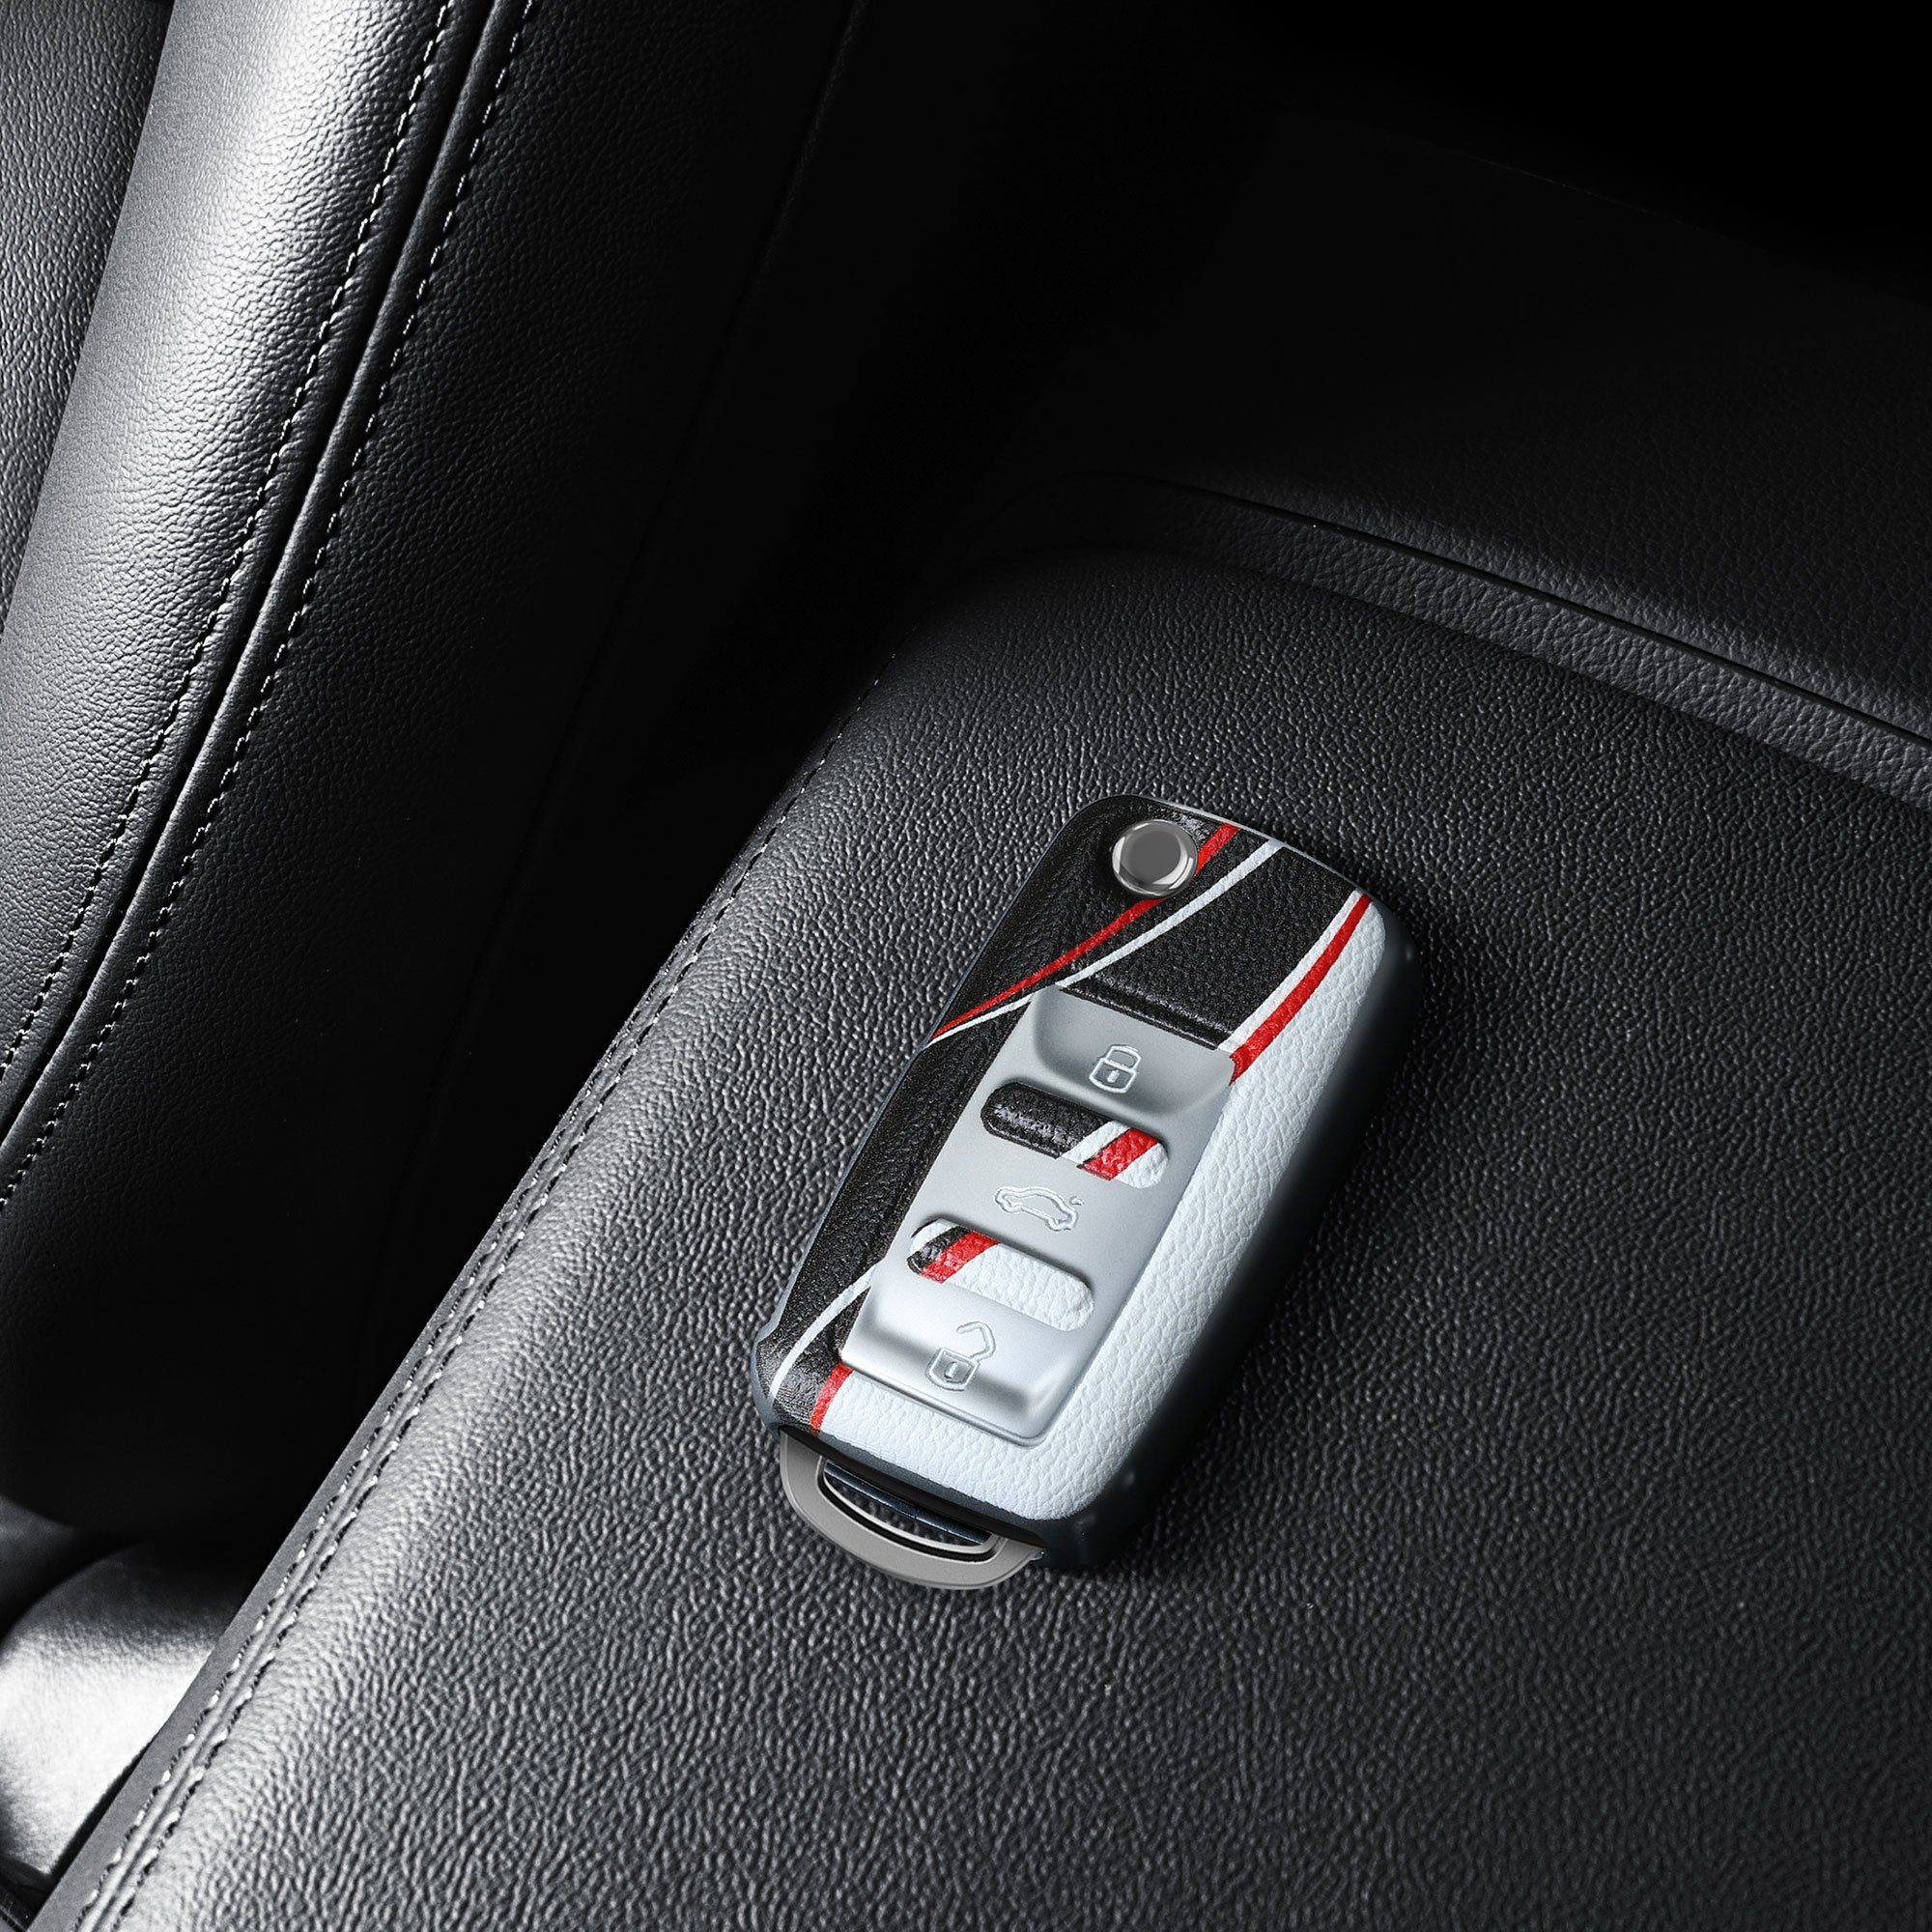 für Skoda Schlüsseltasche Schutzhülle Autoschlüssel Hülle Schlüsselhülle TPU kwmobile VW Seat, Cover Rot